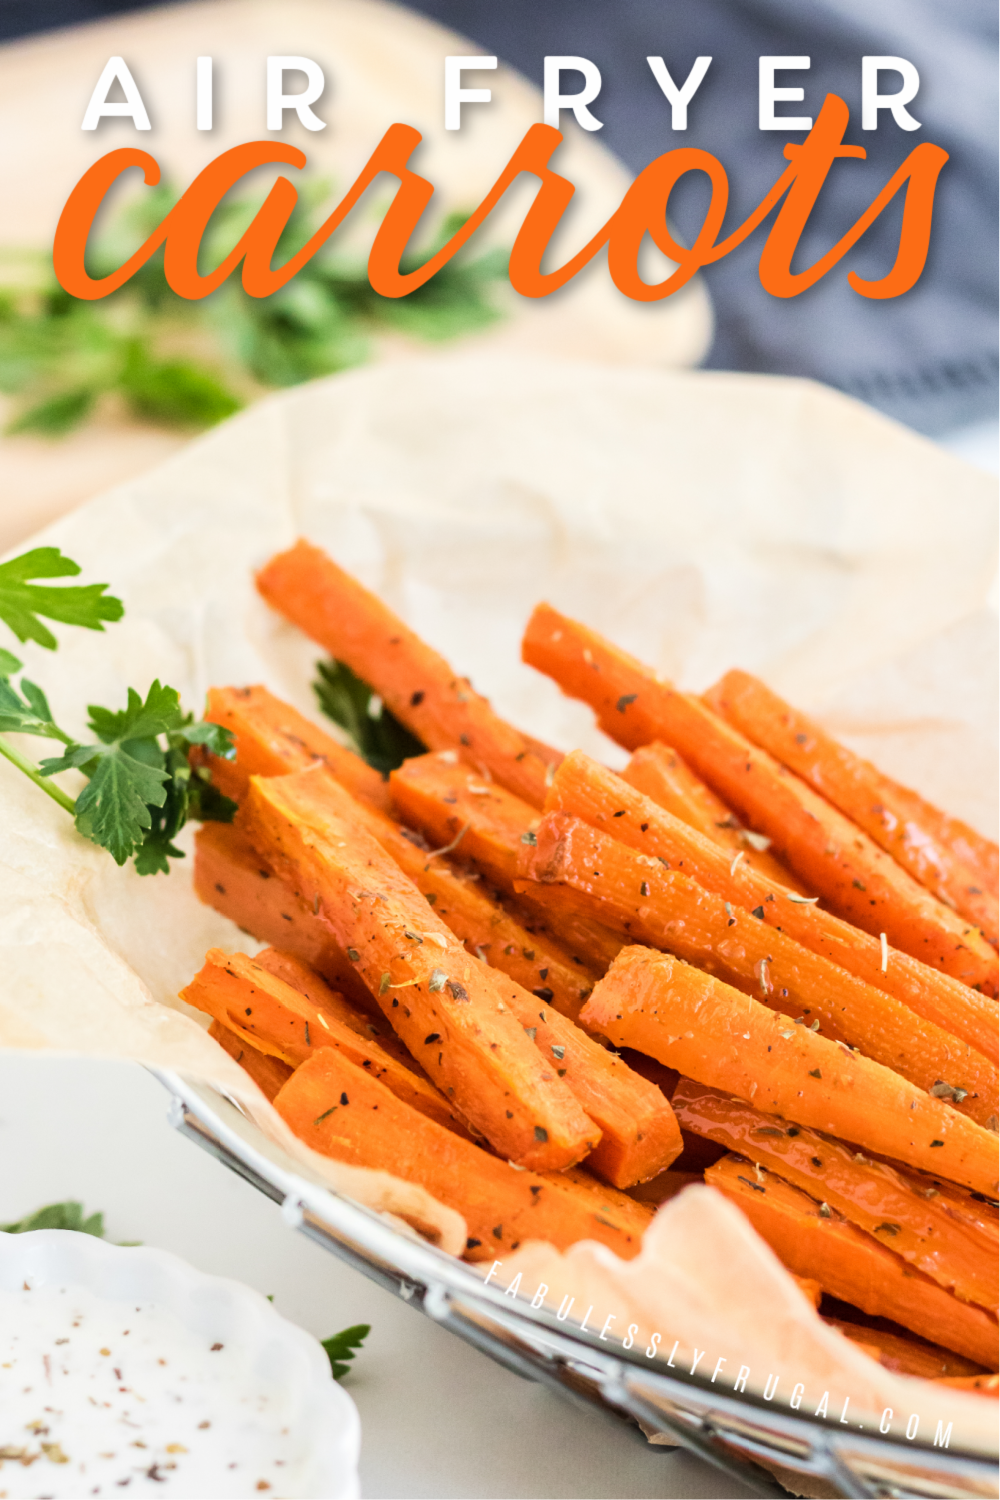 air fryer carrot fries